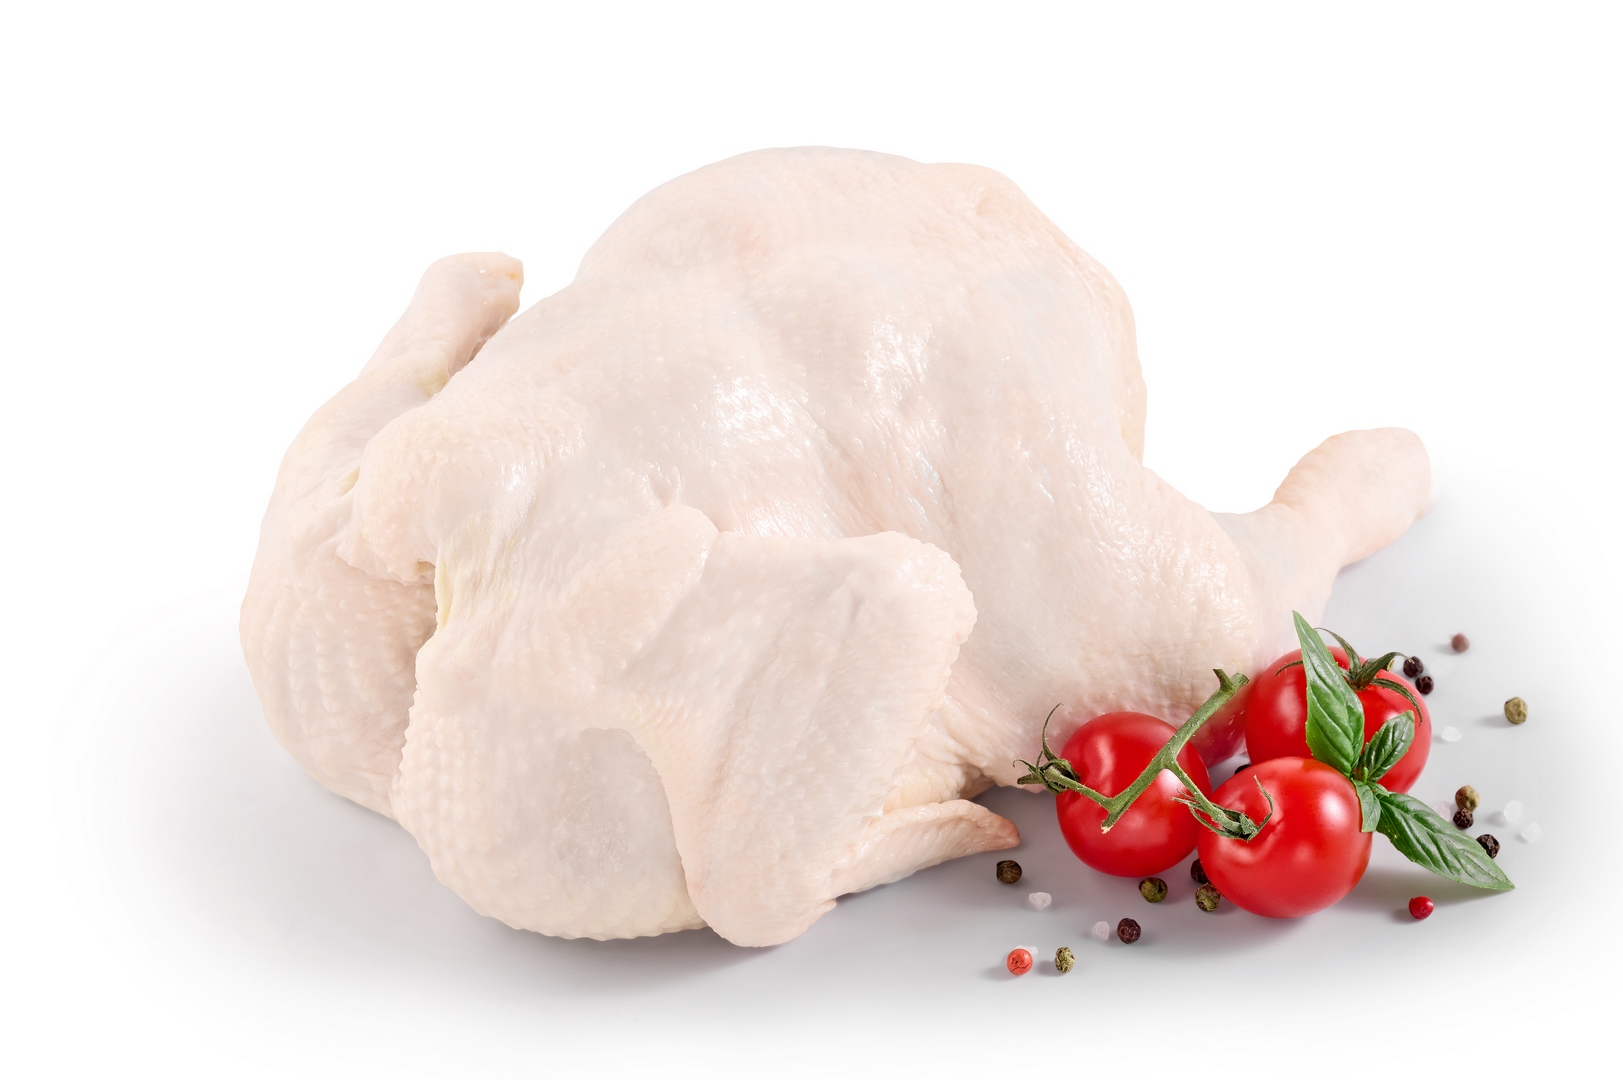 Broiler-chicken carcass